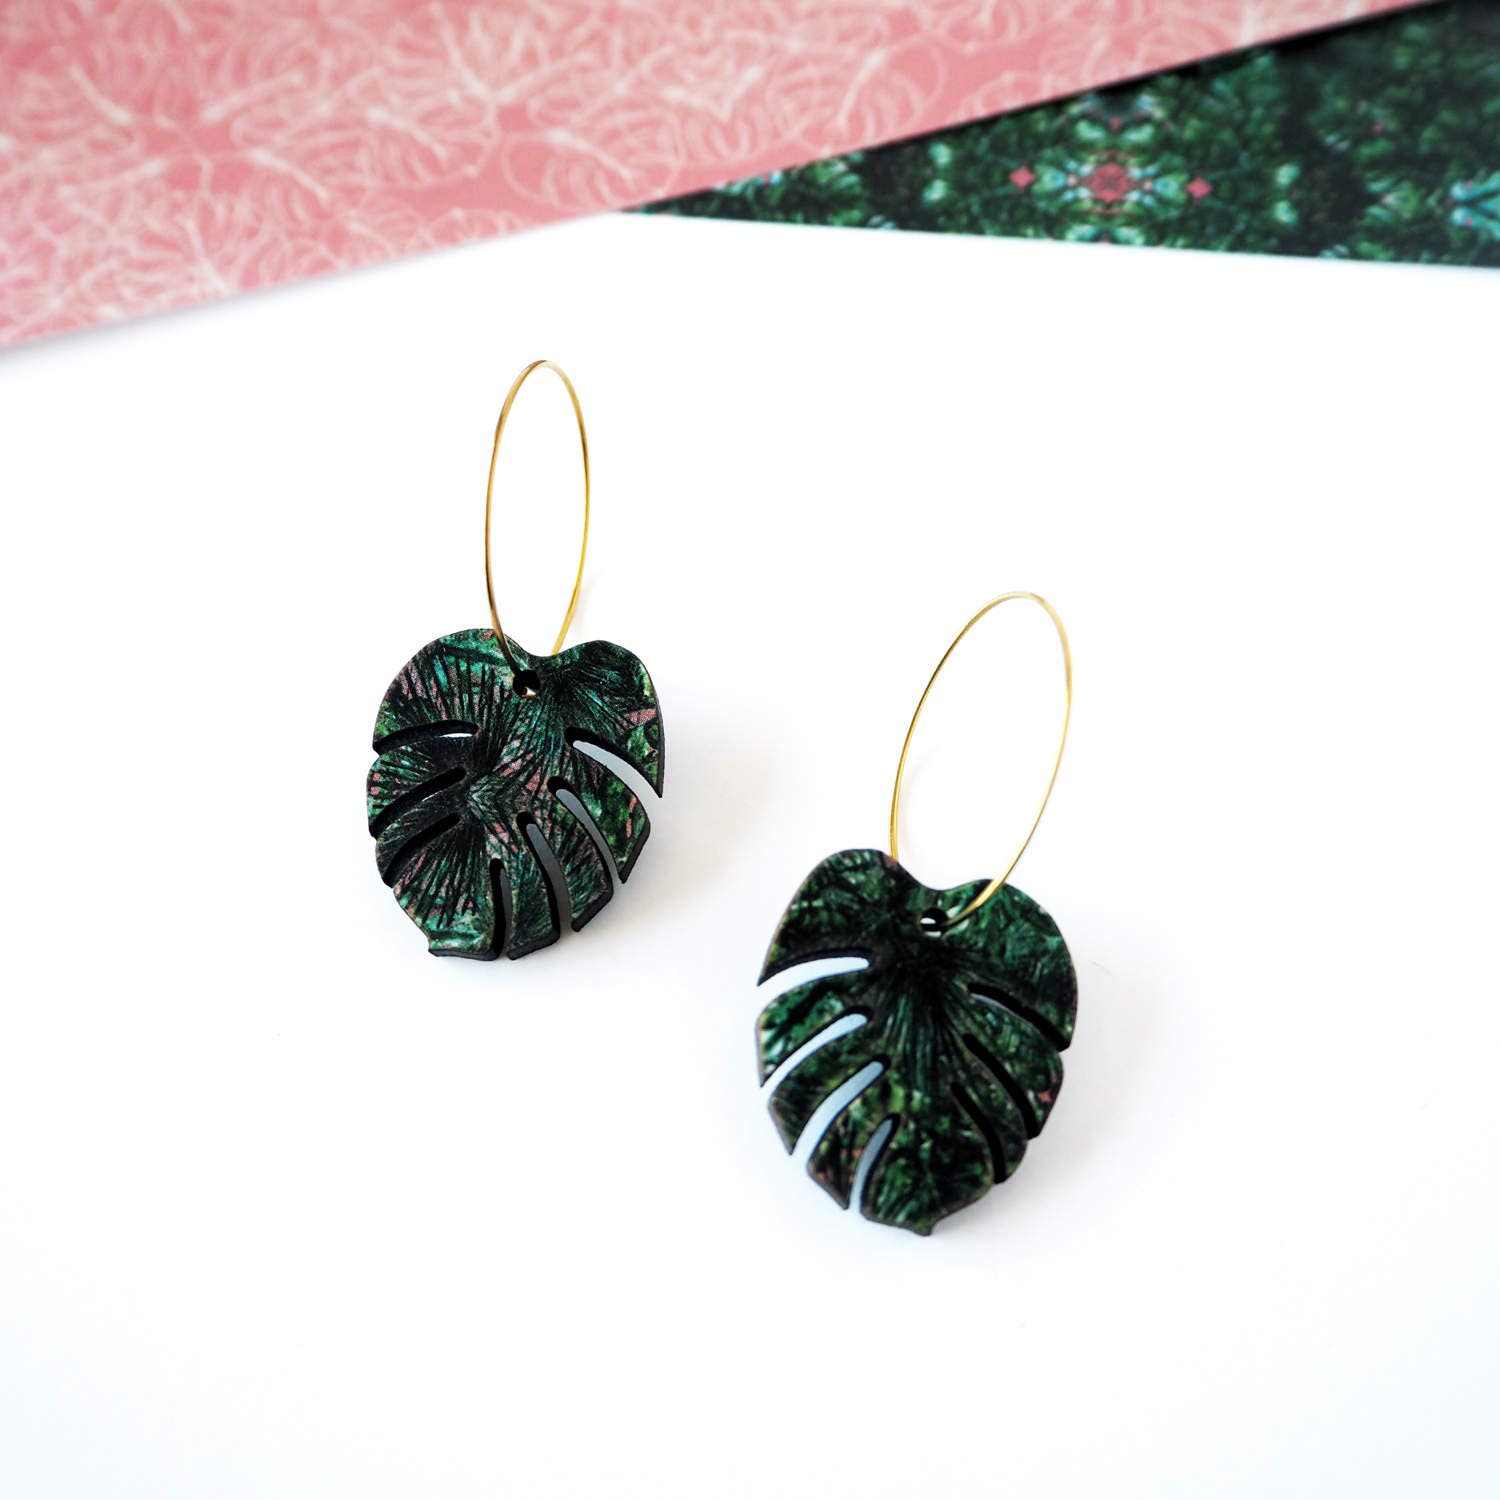 Green Plant Hoop Earrings - Tropical Leaf Jewellery Monstera Botanical